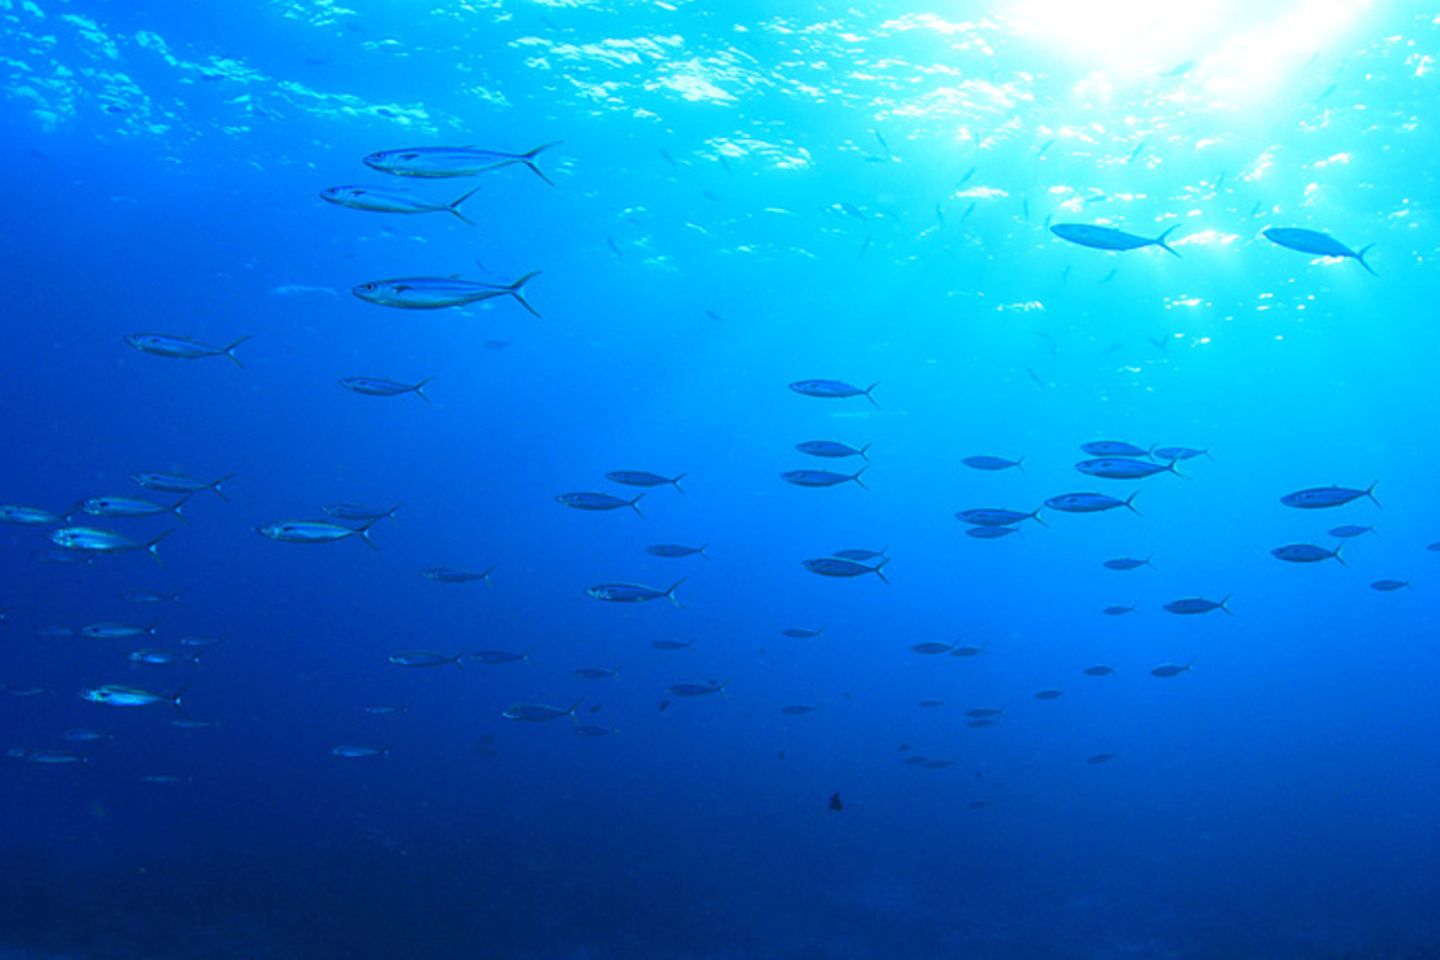 Tierlexikon: Atlantische Heringe gehören zu den häufigsten Fischen weltweit